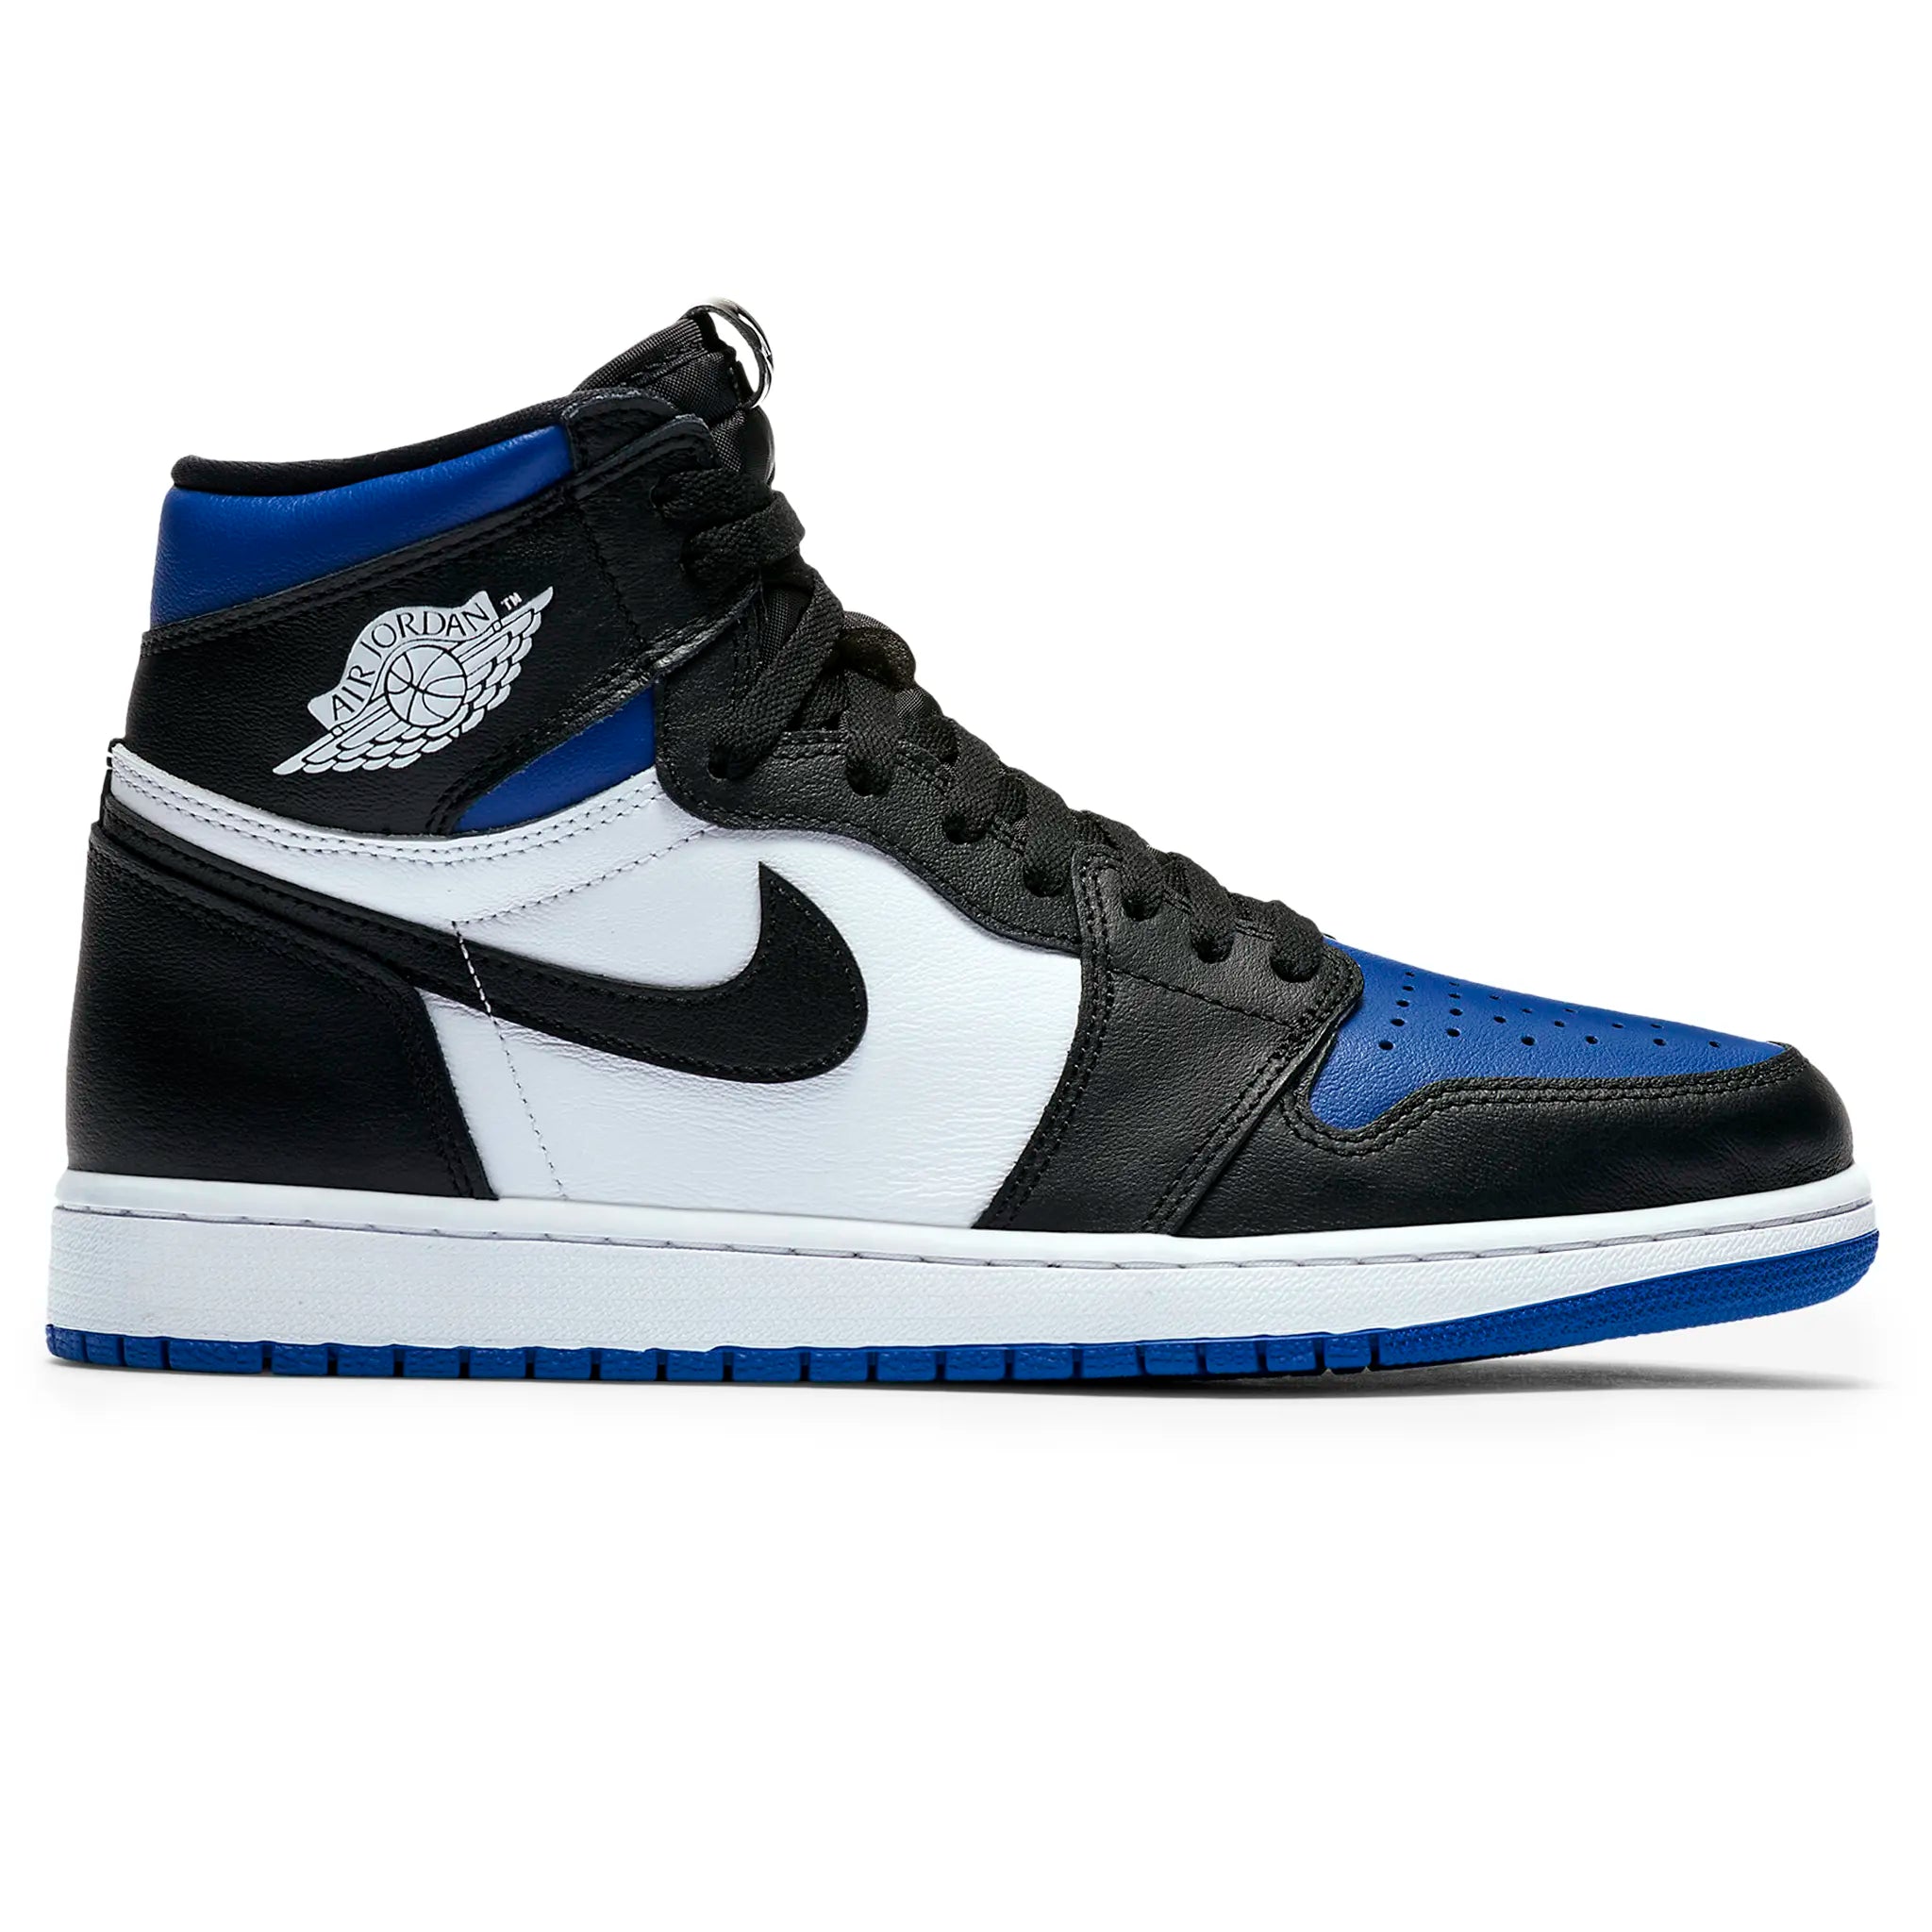 Side view of Air Jordan 1 Royal Toe Sneaker 555088-041